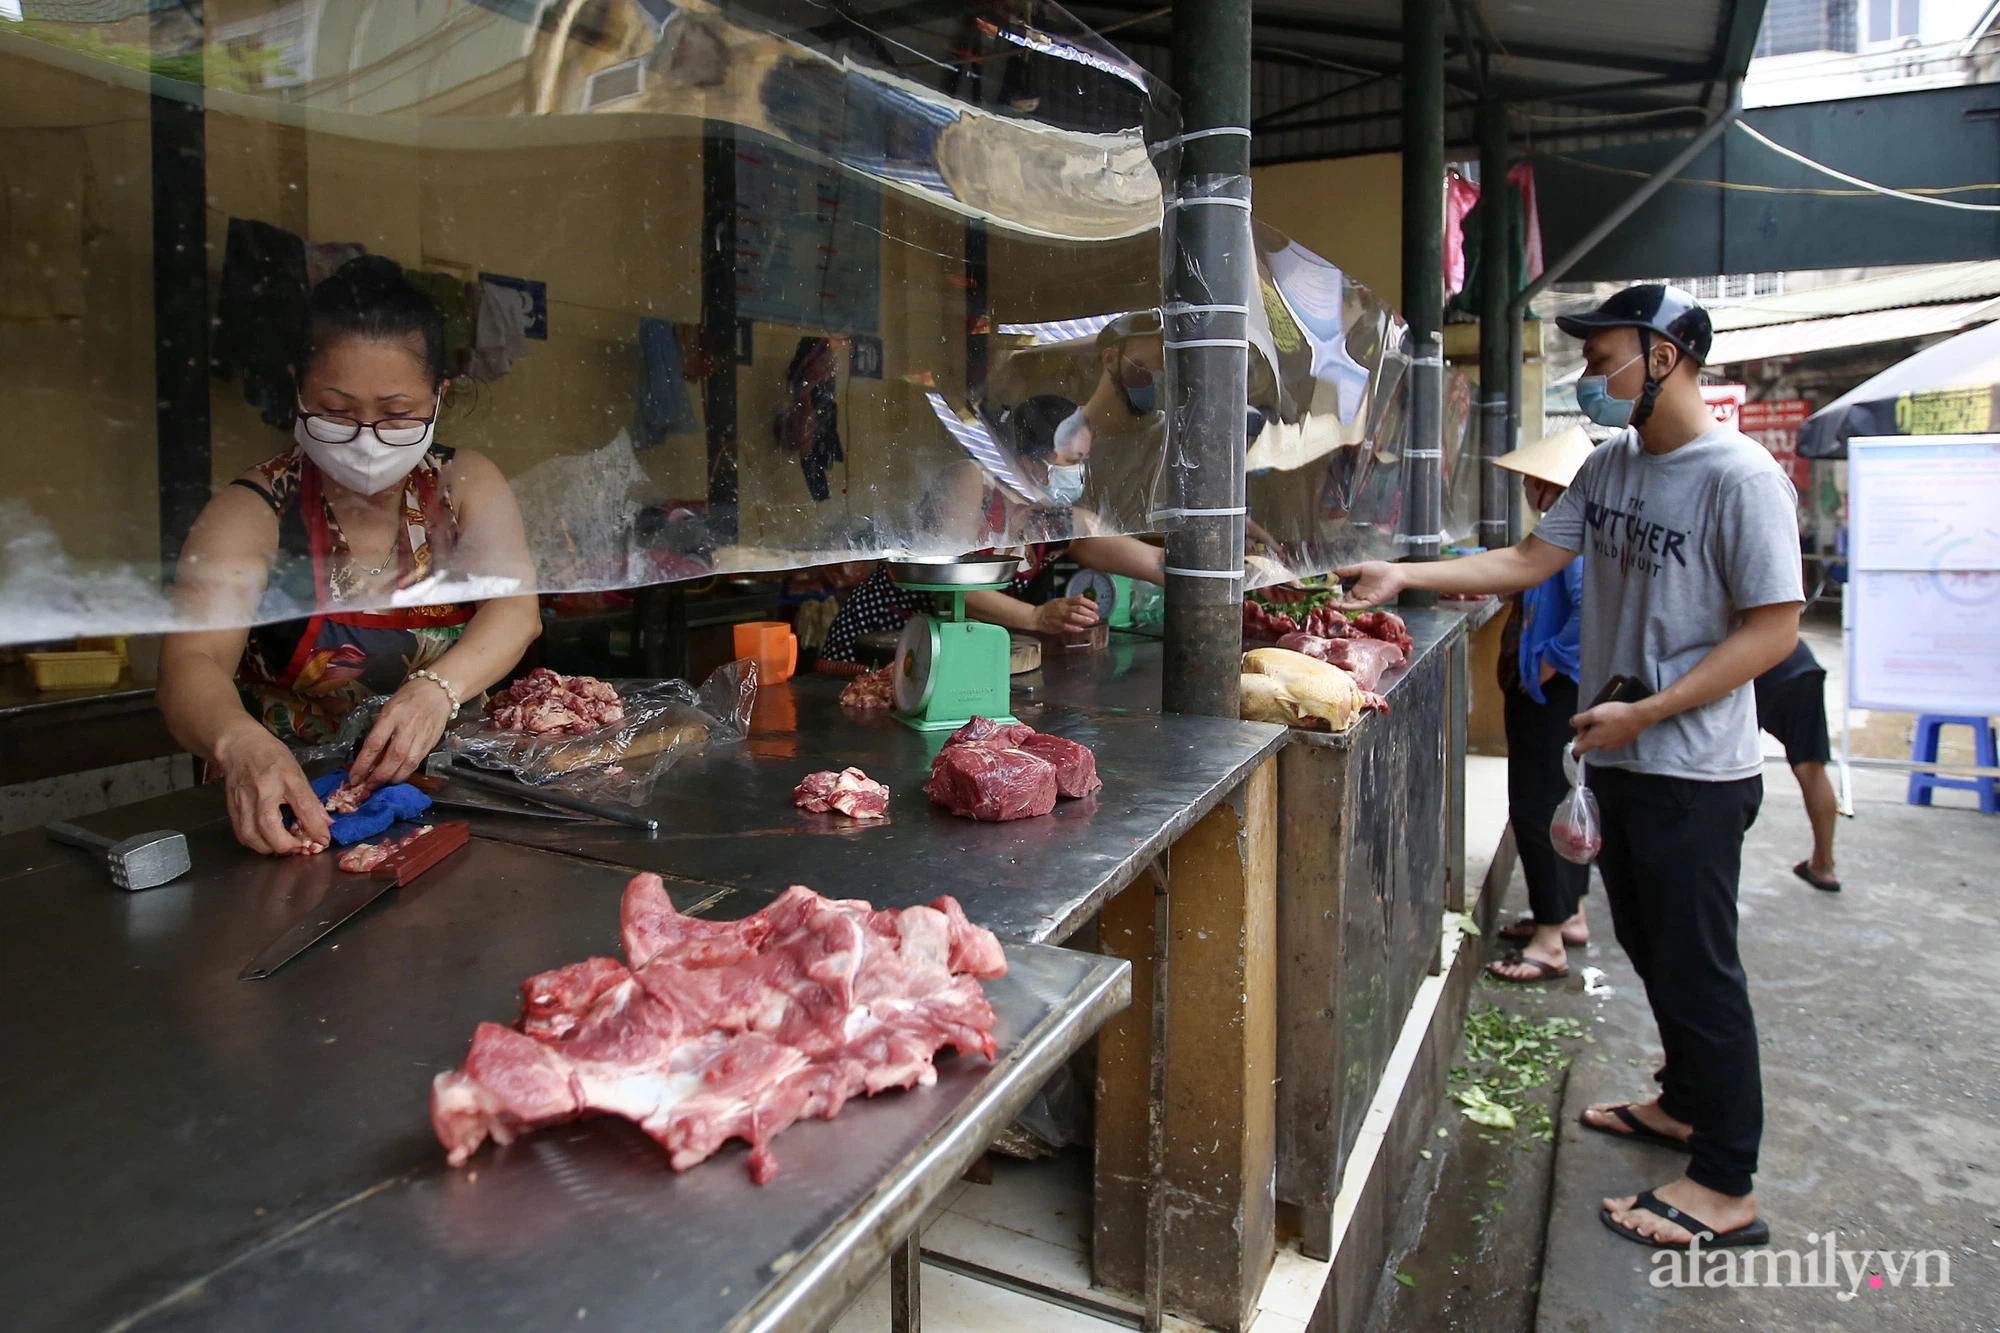 Ấn tượng với khu chợ dân sinh đầu tiên ở Hà Nội quây tấm nilon phòng dịch COVID-19, tiểu thương chia ca đứng bán theo ngày chẵn, lẻ - Ảnh 17.